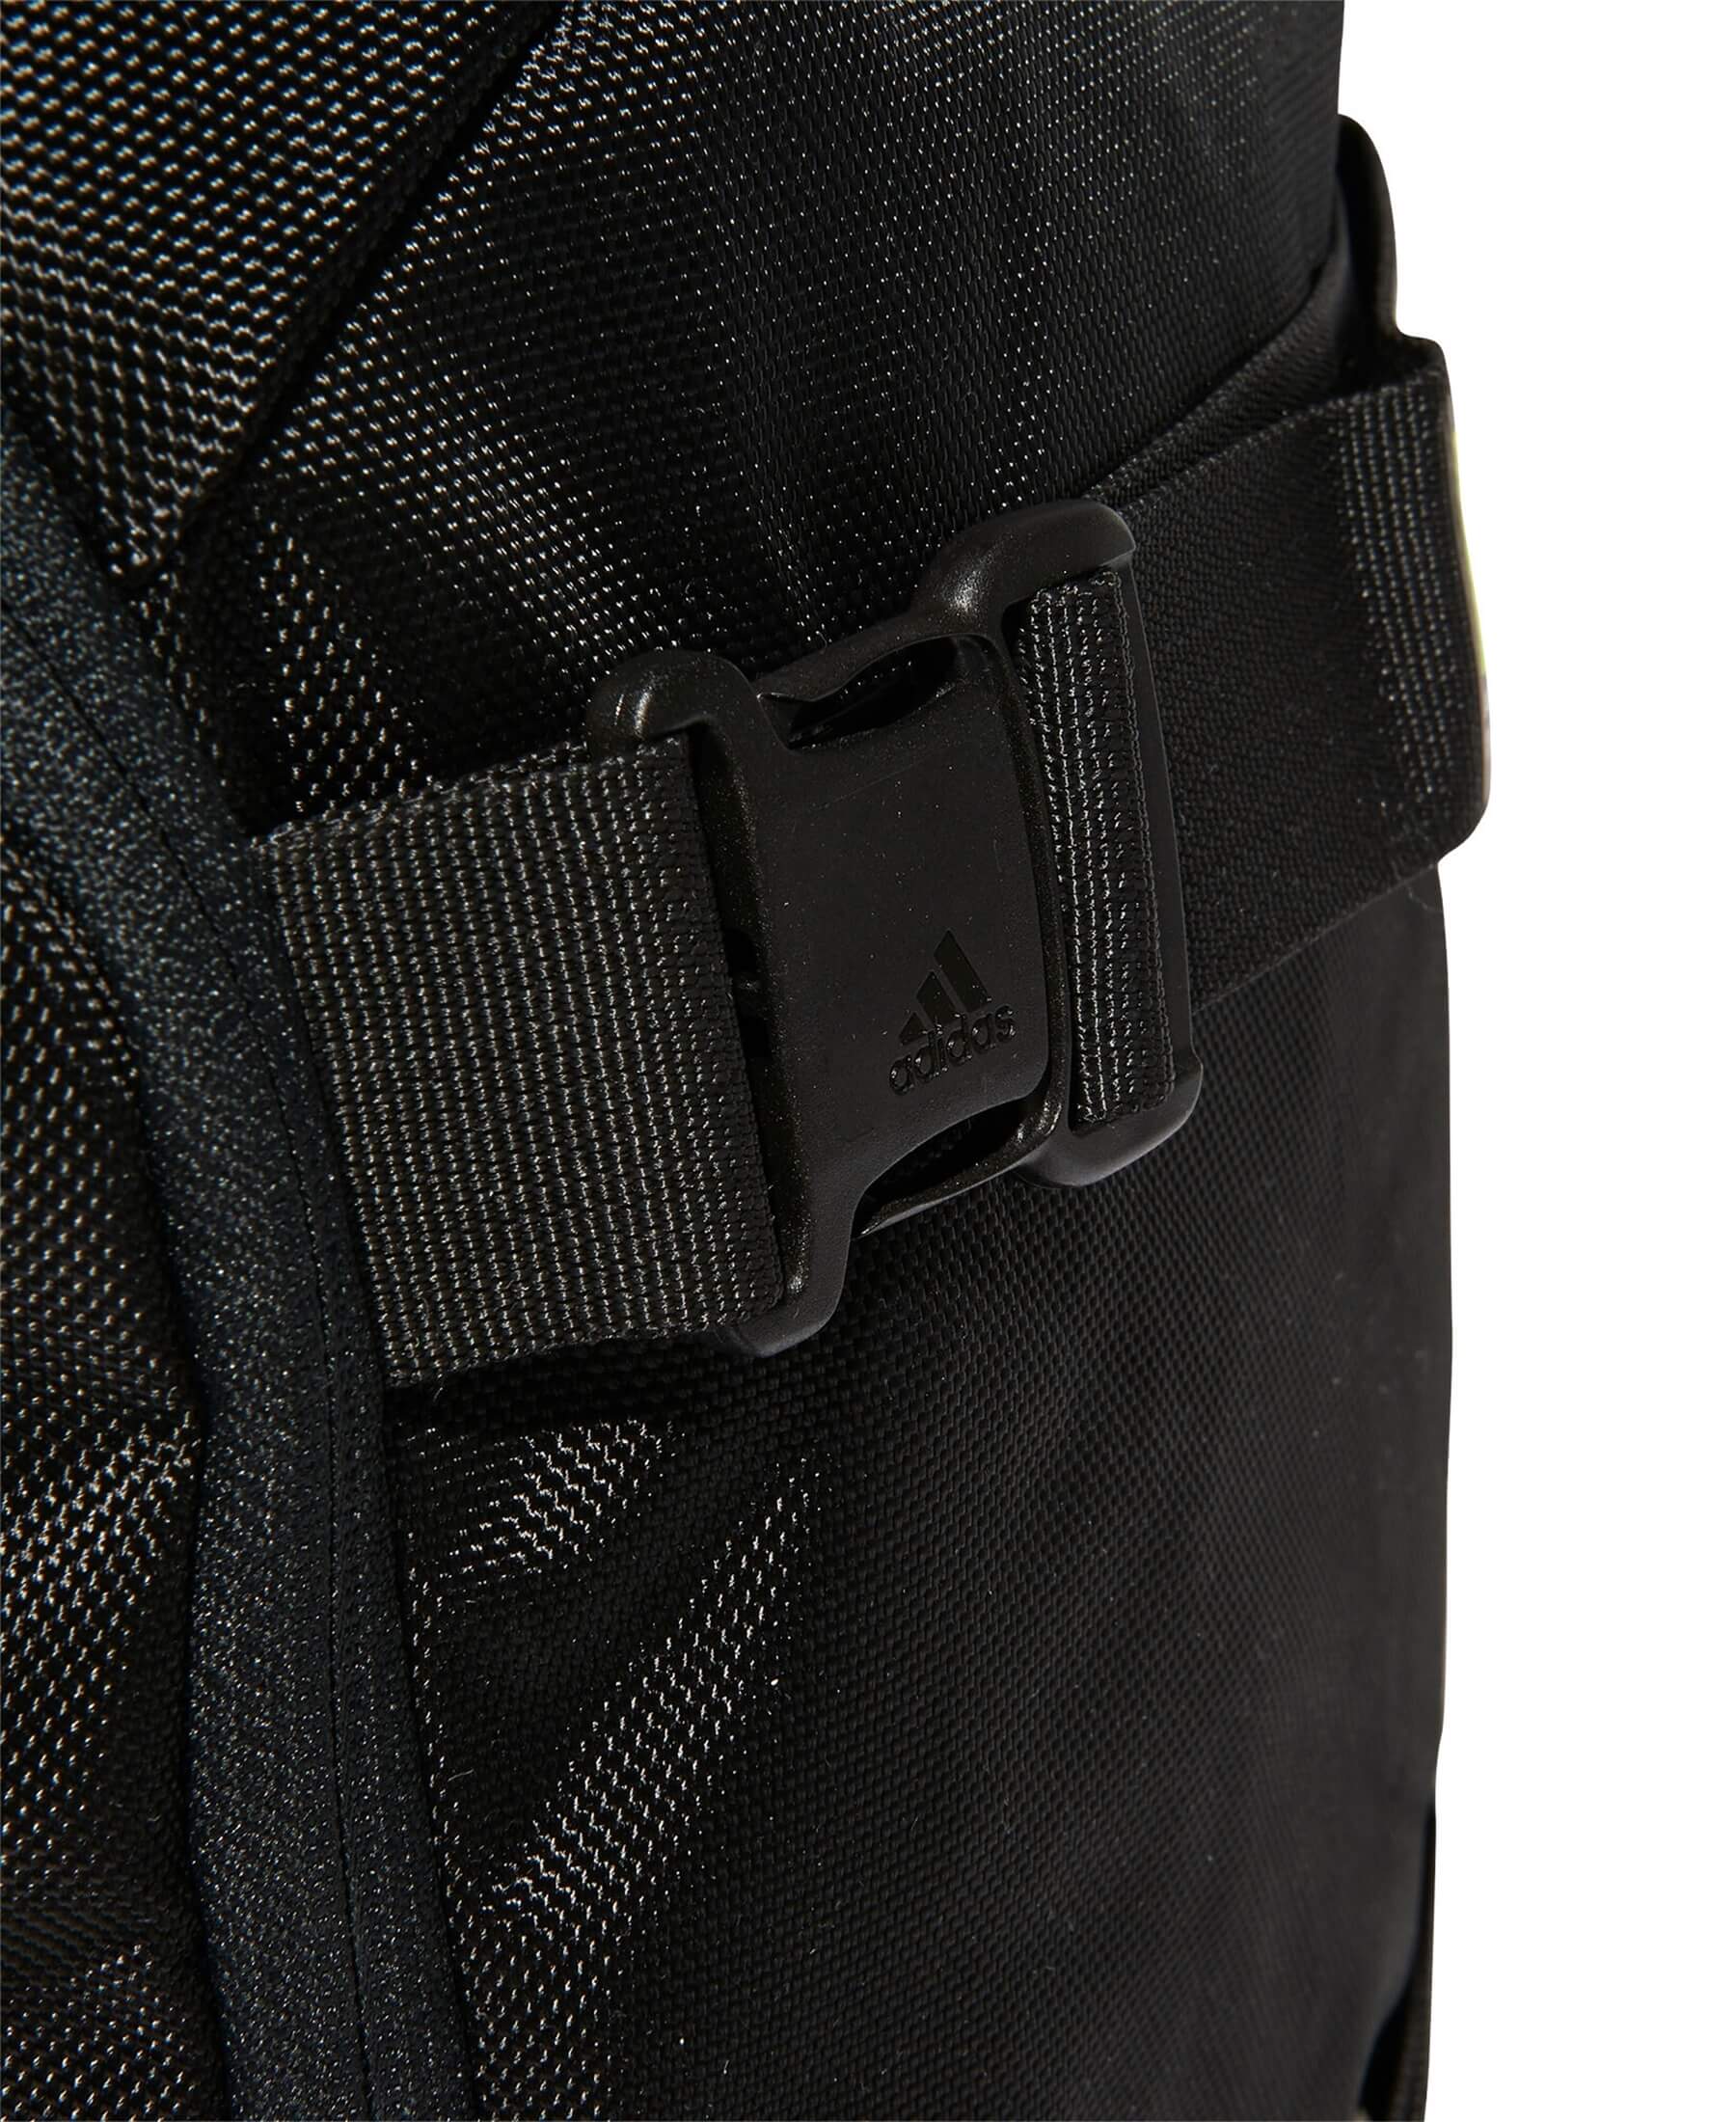 adidas 4Athlts ID Rucksack - Der ideale Rucksack für Sportler und Outdoor-Enthusiasten. Entdecke den vielseitigen 4Athlts ID Rucksack, der mit seinem geräumigen Design und den praktischen Fächern ausreichend Platz für deine Ausrüstung bietet. Dieser hochwertige Rucksack kombiniert Funktionalität und Stil und ist aus strapazierfähigem Material gefertigt. Bestelle jetzt den 4Athlts ID Rucksack bei SHOP4TEAMSPORT und sei bestens ausgestattet für deine sportlichen Aktivitäten und Abenteuer.